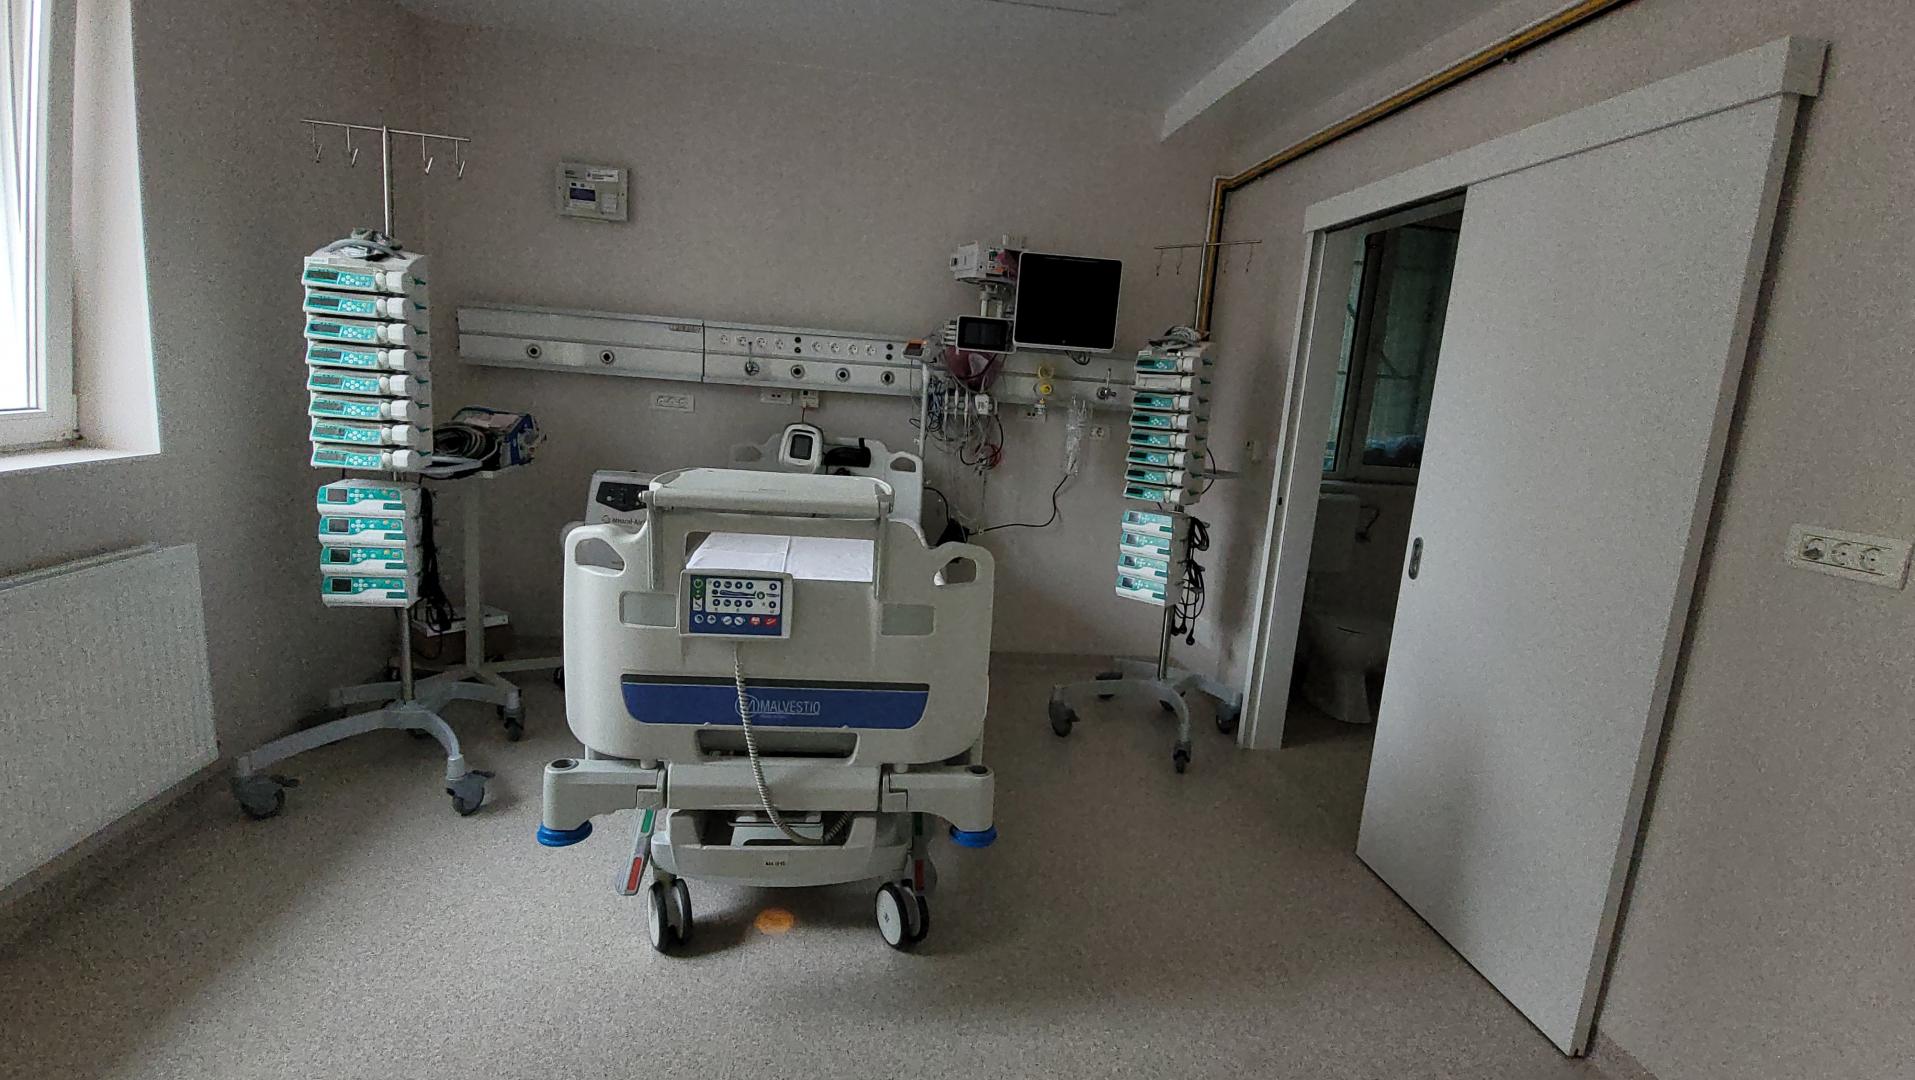 Clujul a devenit centru de transplant hepatic: “Este un moment istoric!”